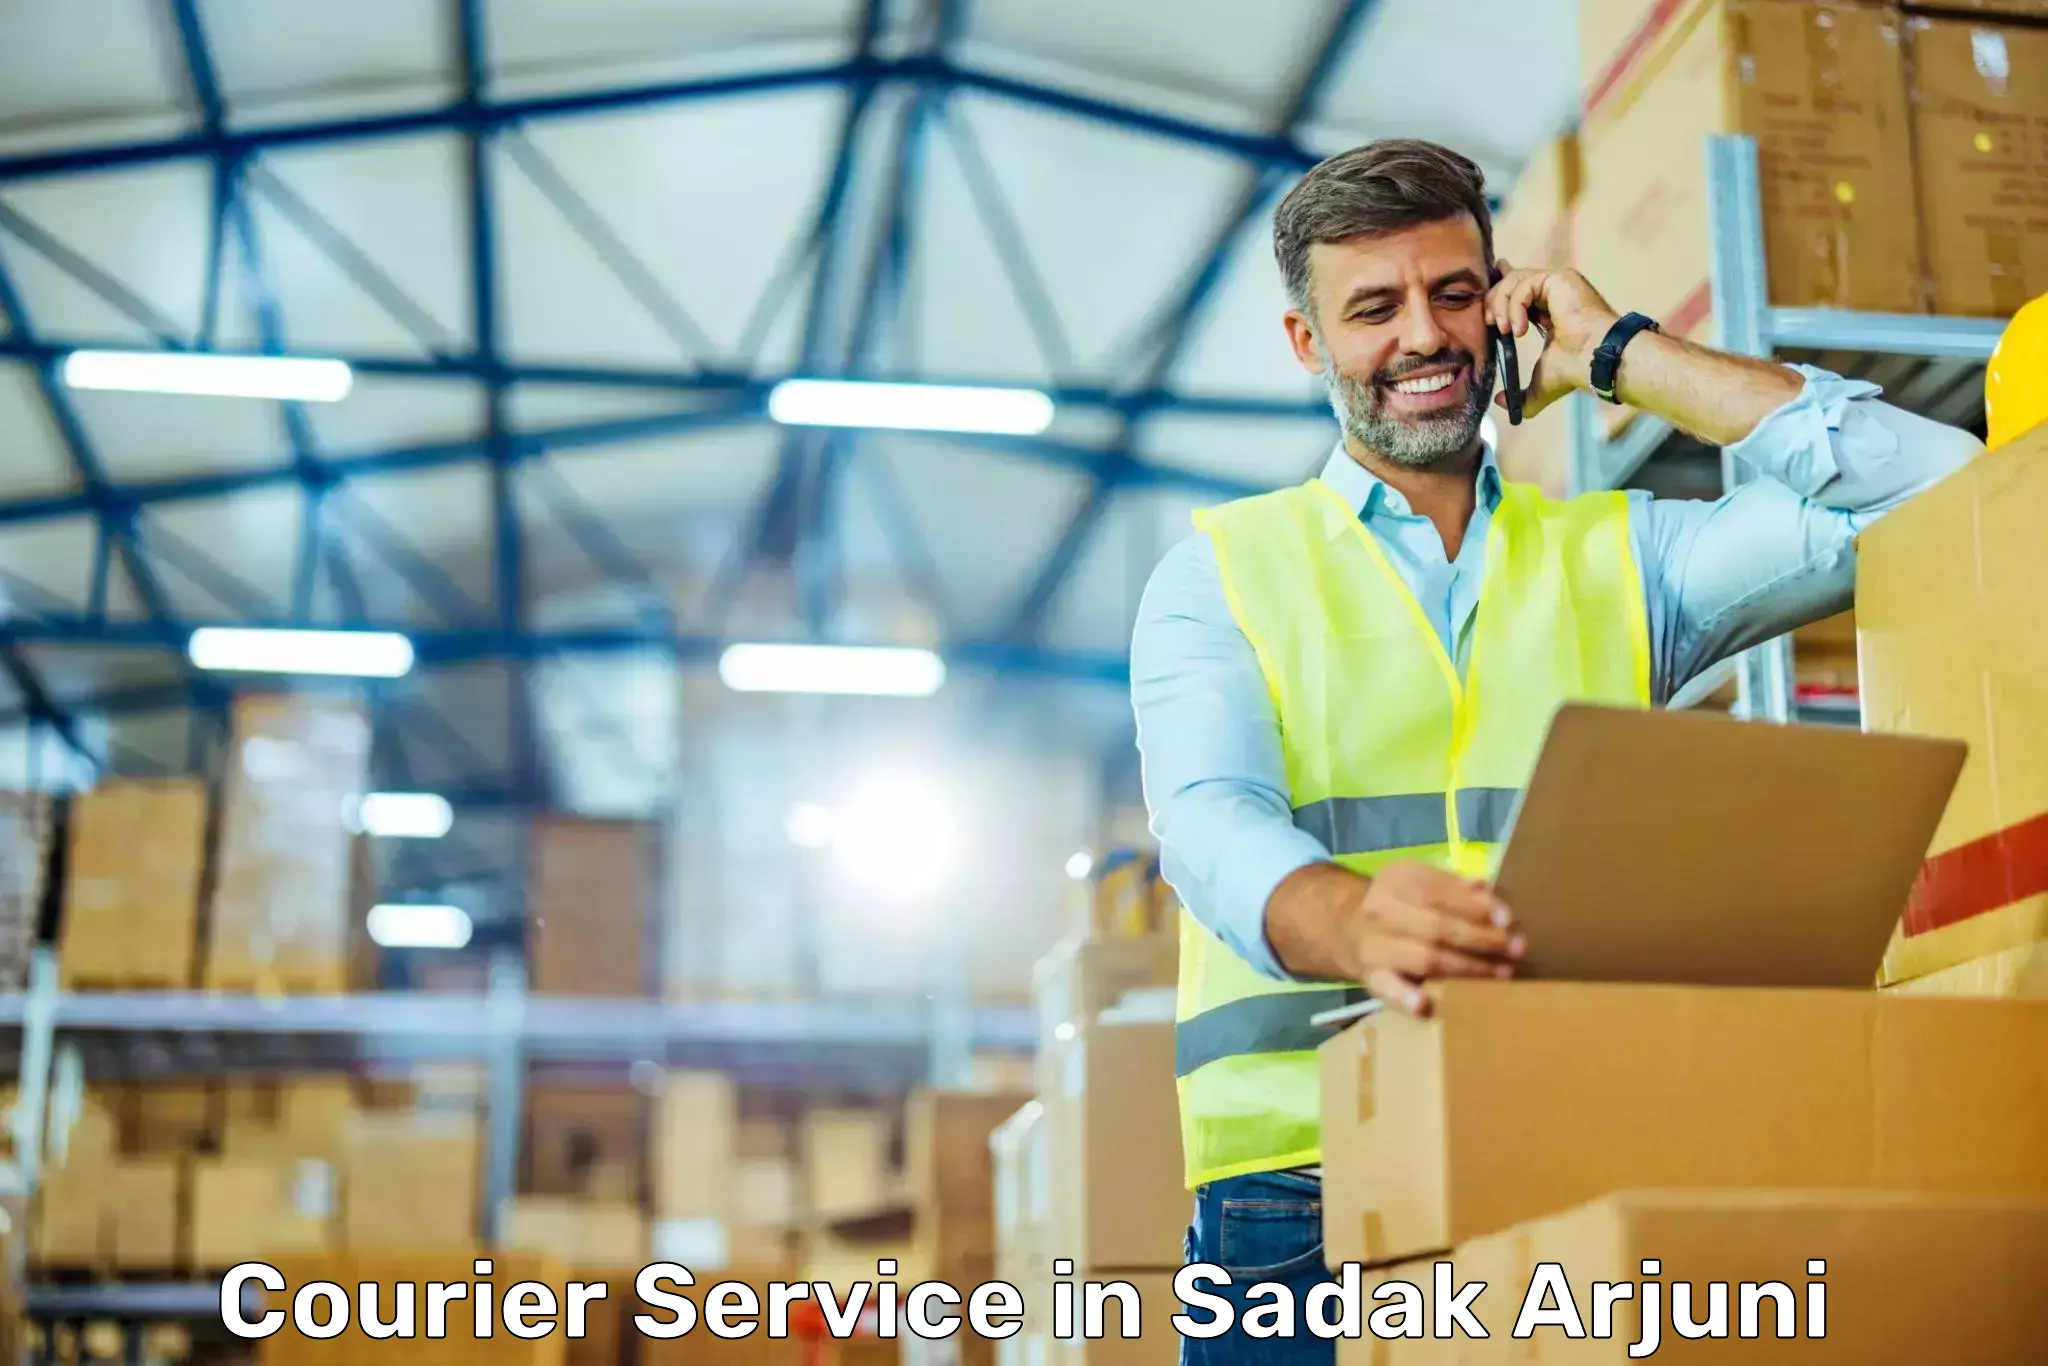 Flexible shipping options in Sadak Arjuni